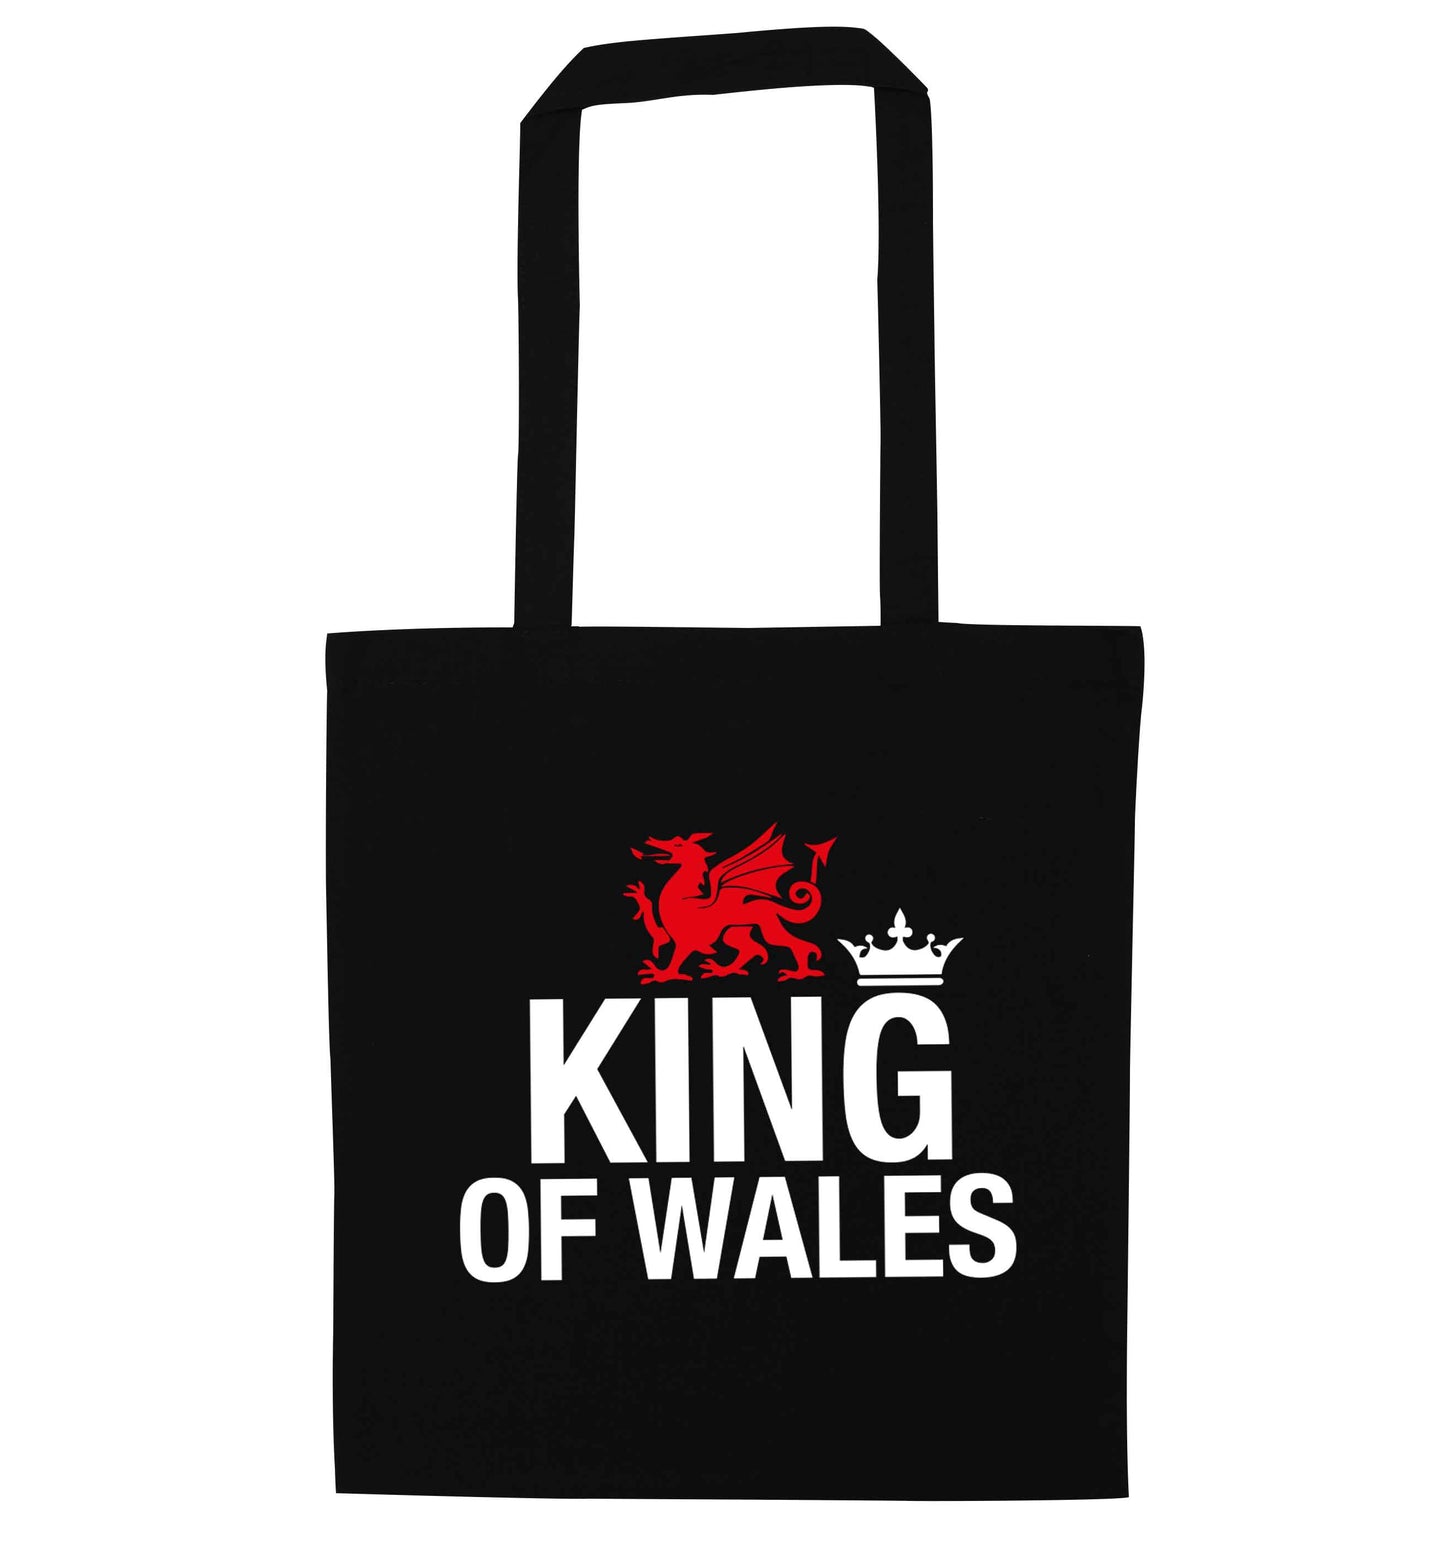 King of Wales black tote bag